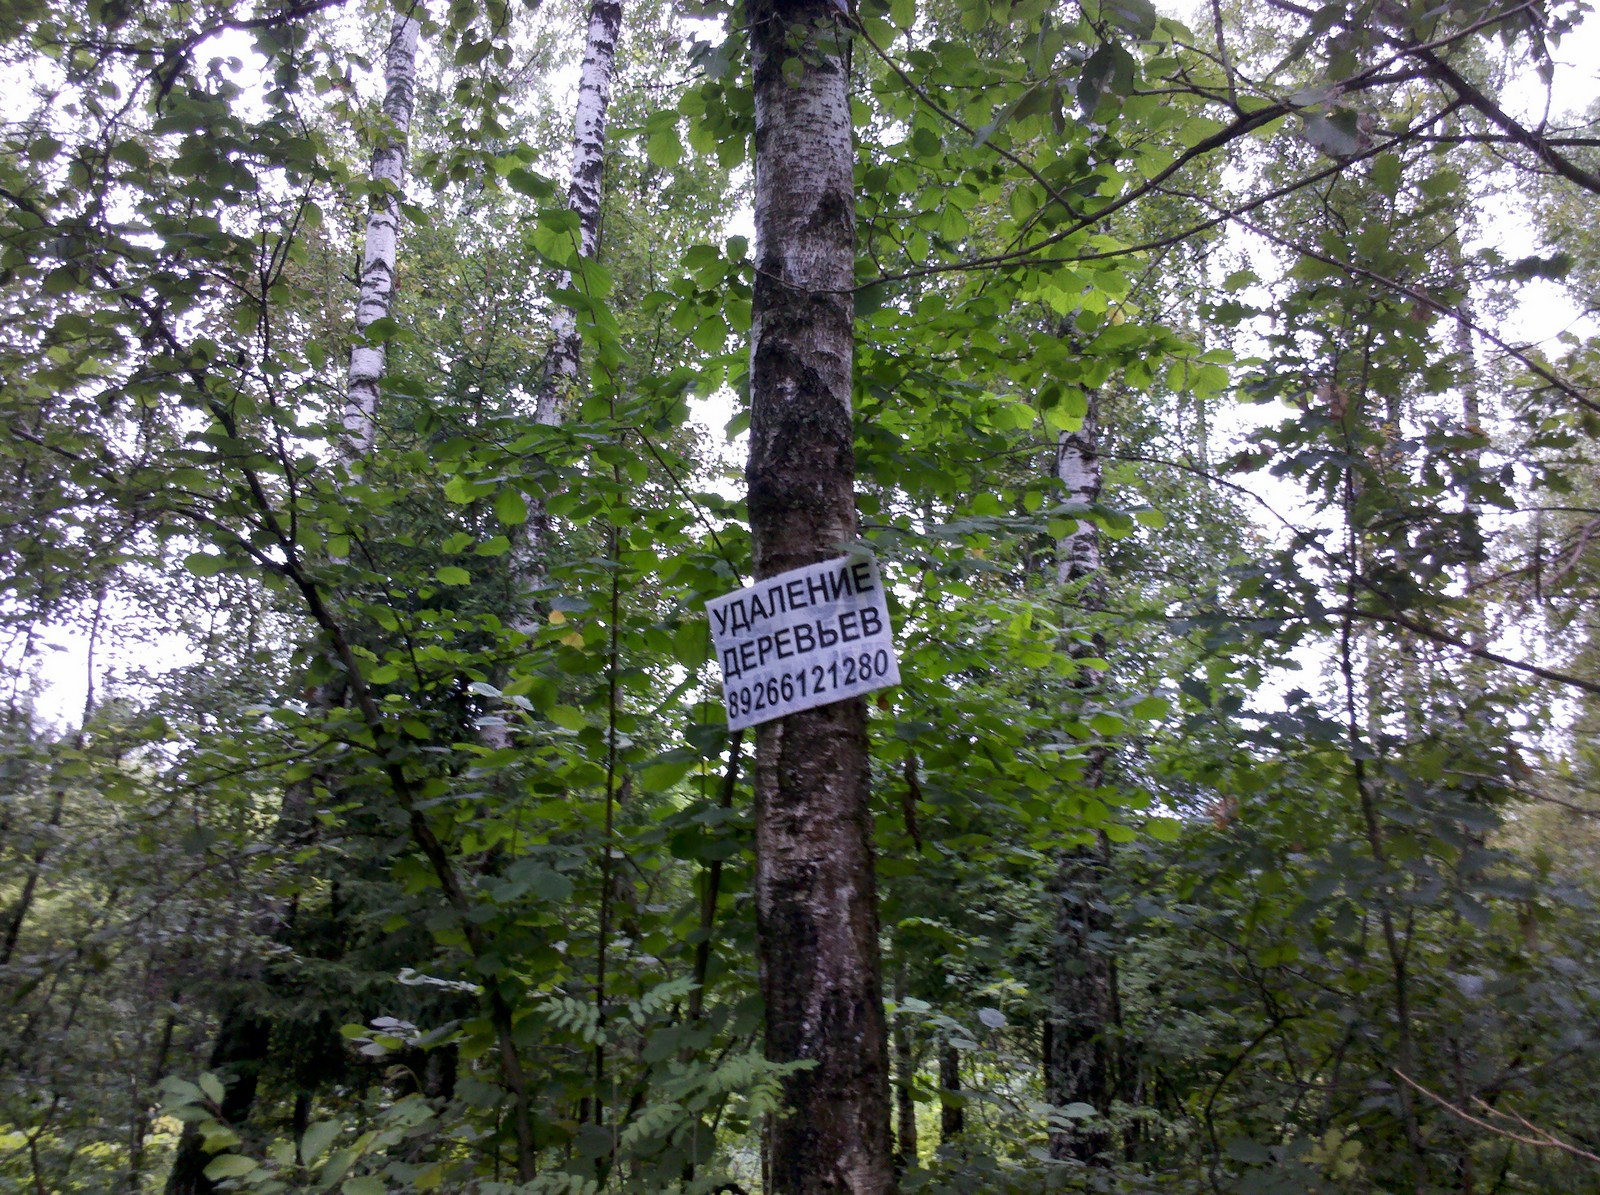 443 2013-07-21_15-16-28_723 Даёшь удаление всех деревьев в Моско